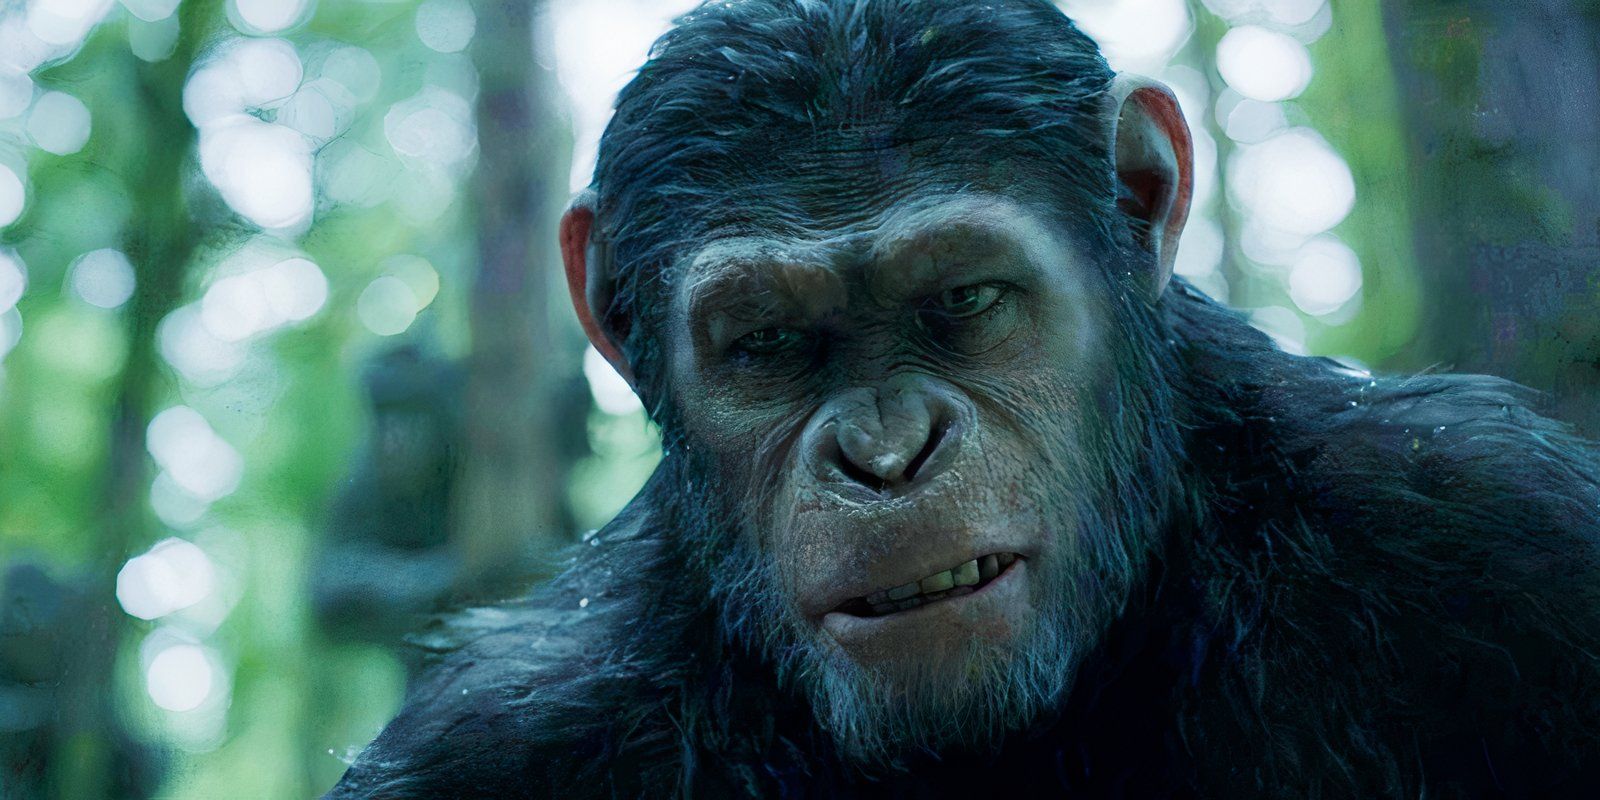 "Tan realista": la primera película de Matt Reeves El planeta de los simios recibe grandes elogios de un experto en simios